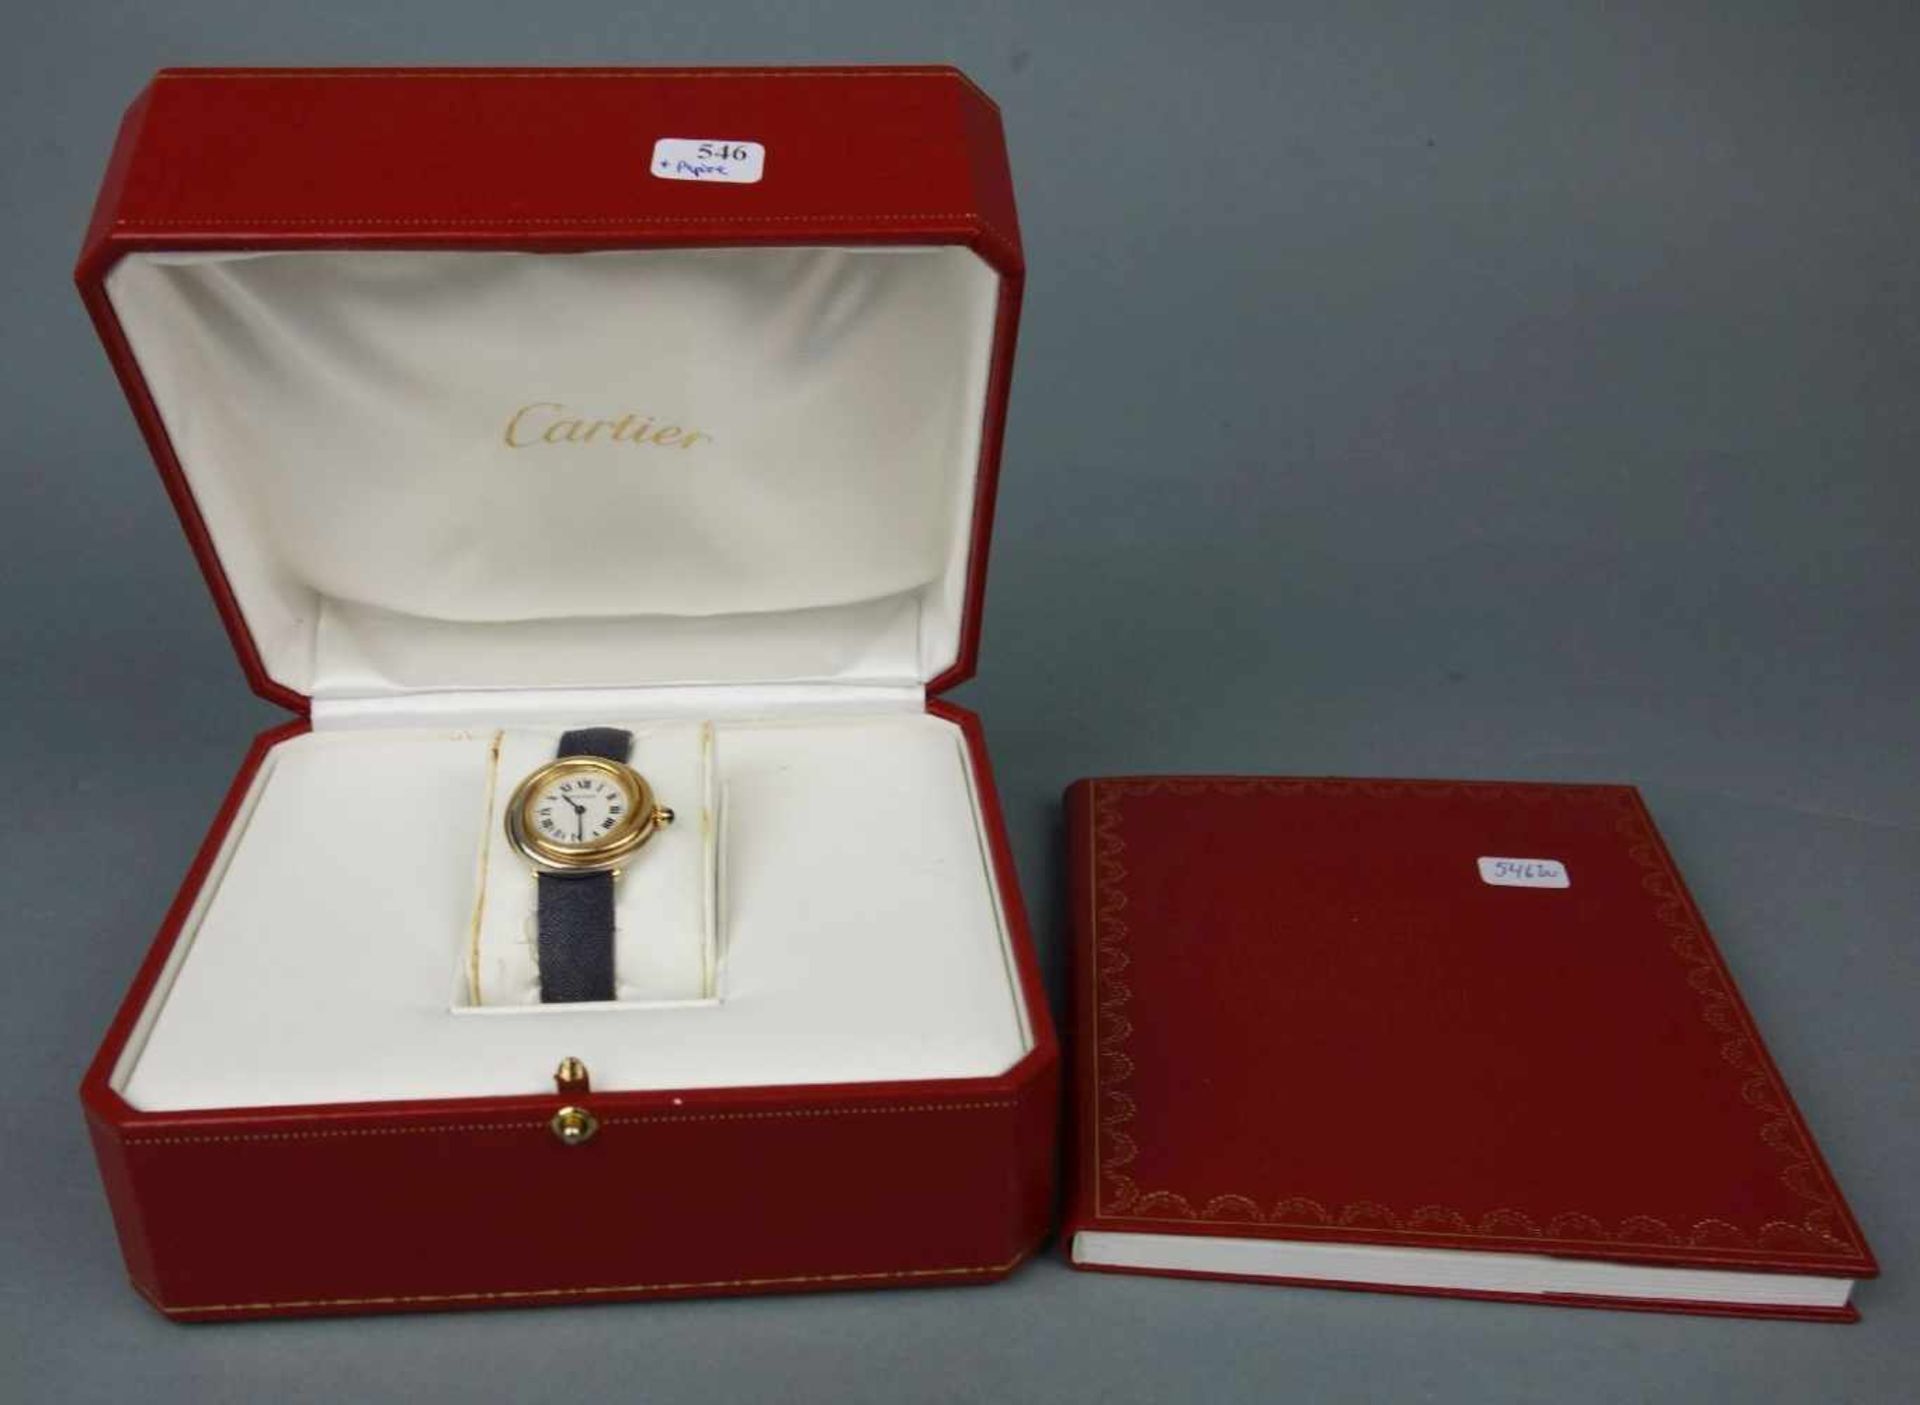 DAMEN ARMBANDUHR - CARTIER TRINITY / ladys wristwatch, Quartz-Uhr, 1998, Manufaktur Cartier / - Image 2 of 7